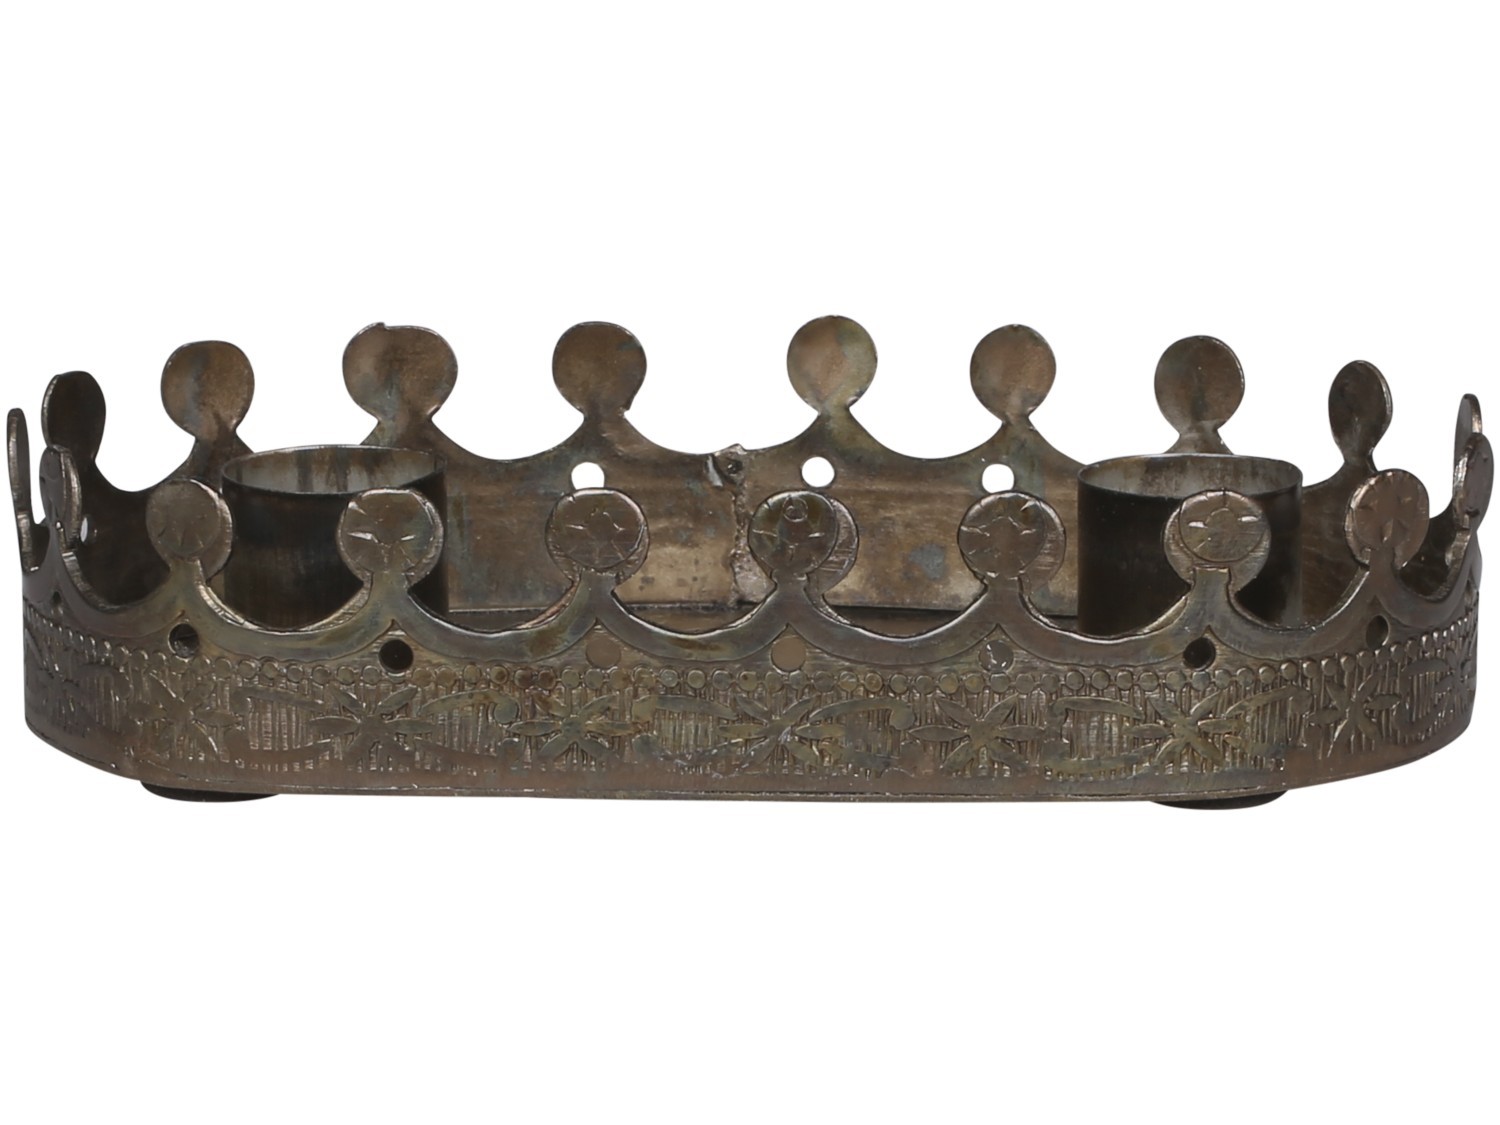 Mosazný antik kovový svícen na 2 úzké svíčky Crowy - 15*8*3cm Chic Antique